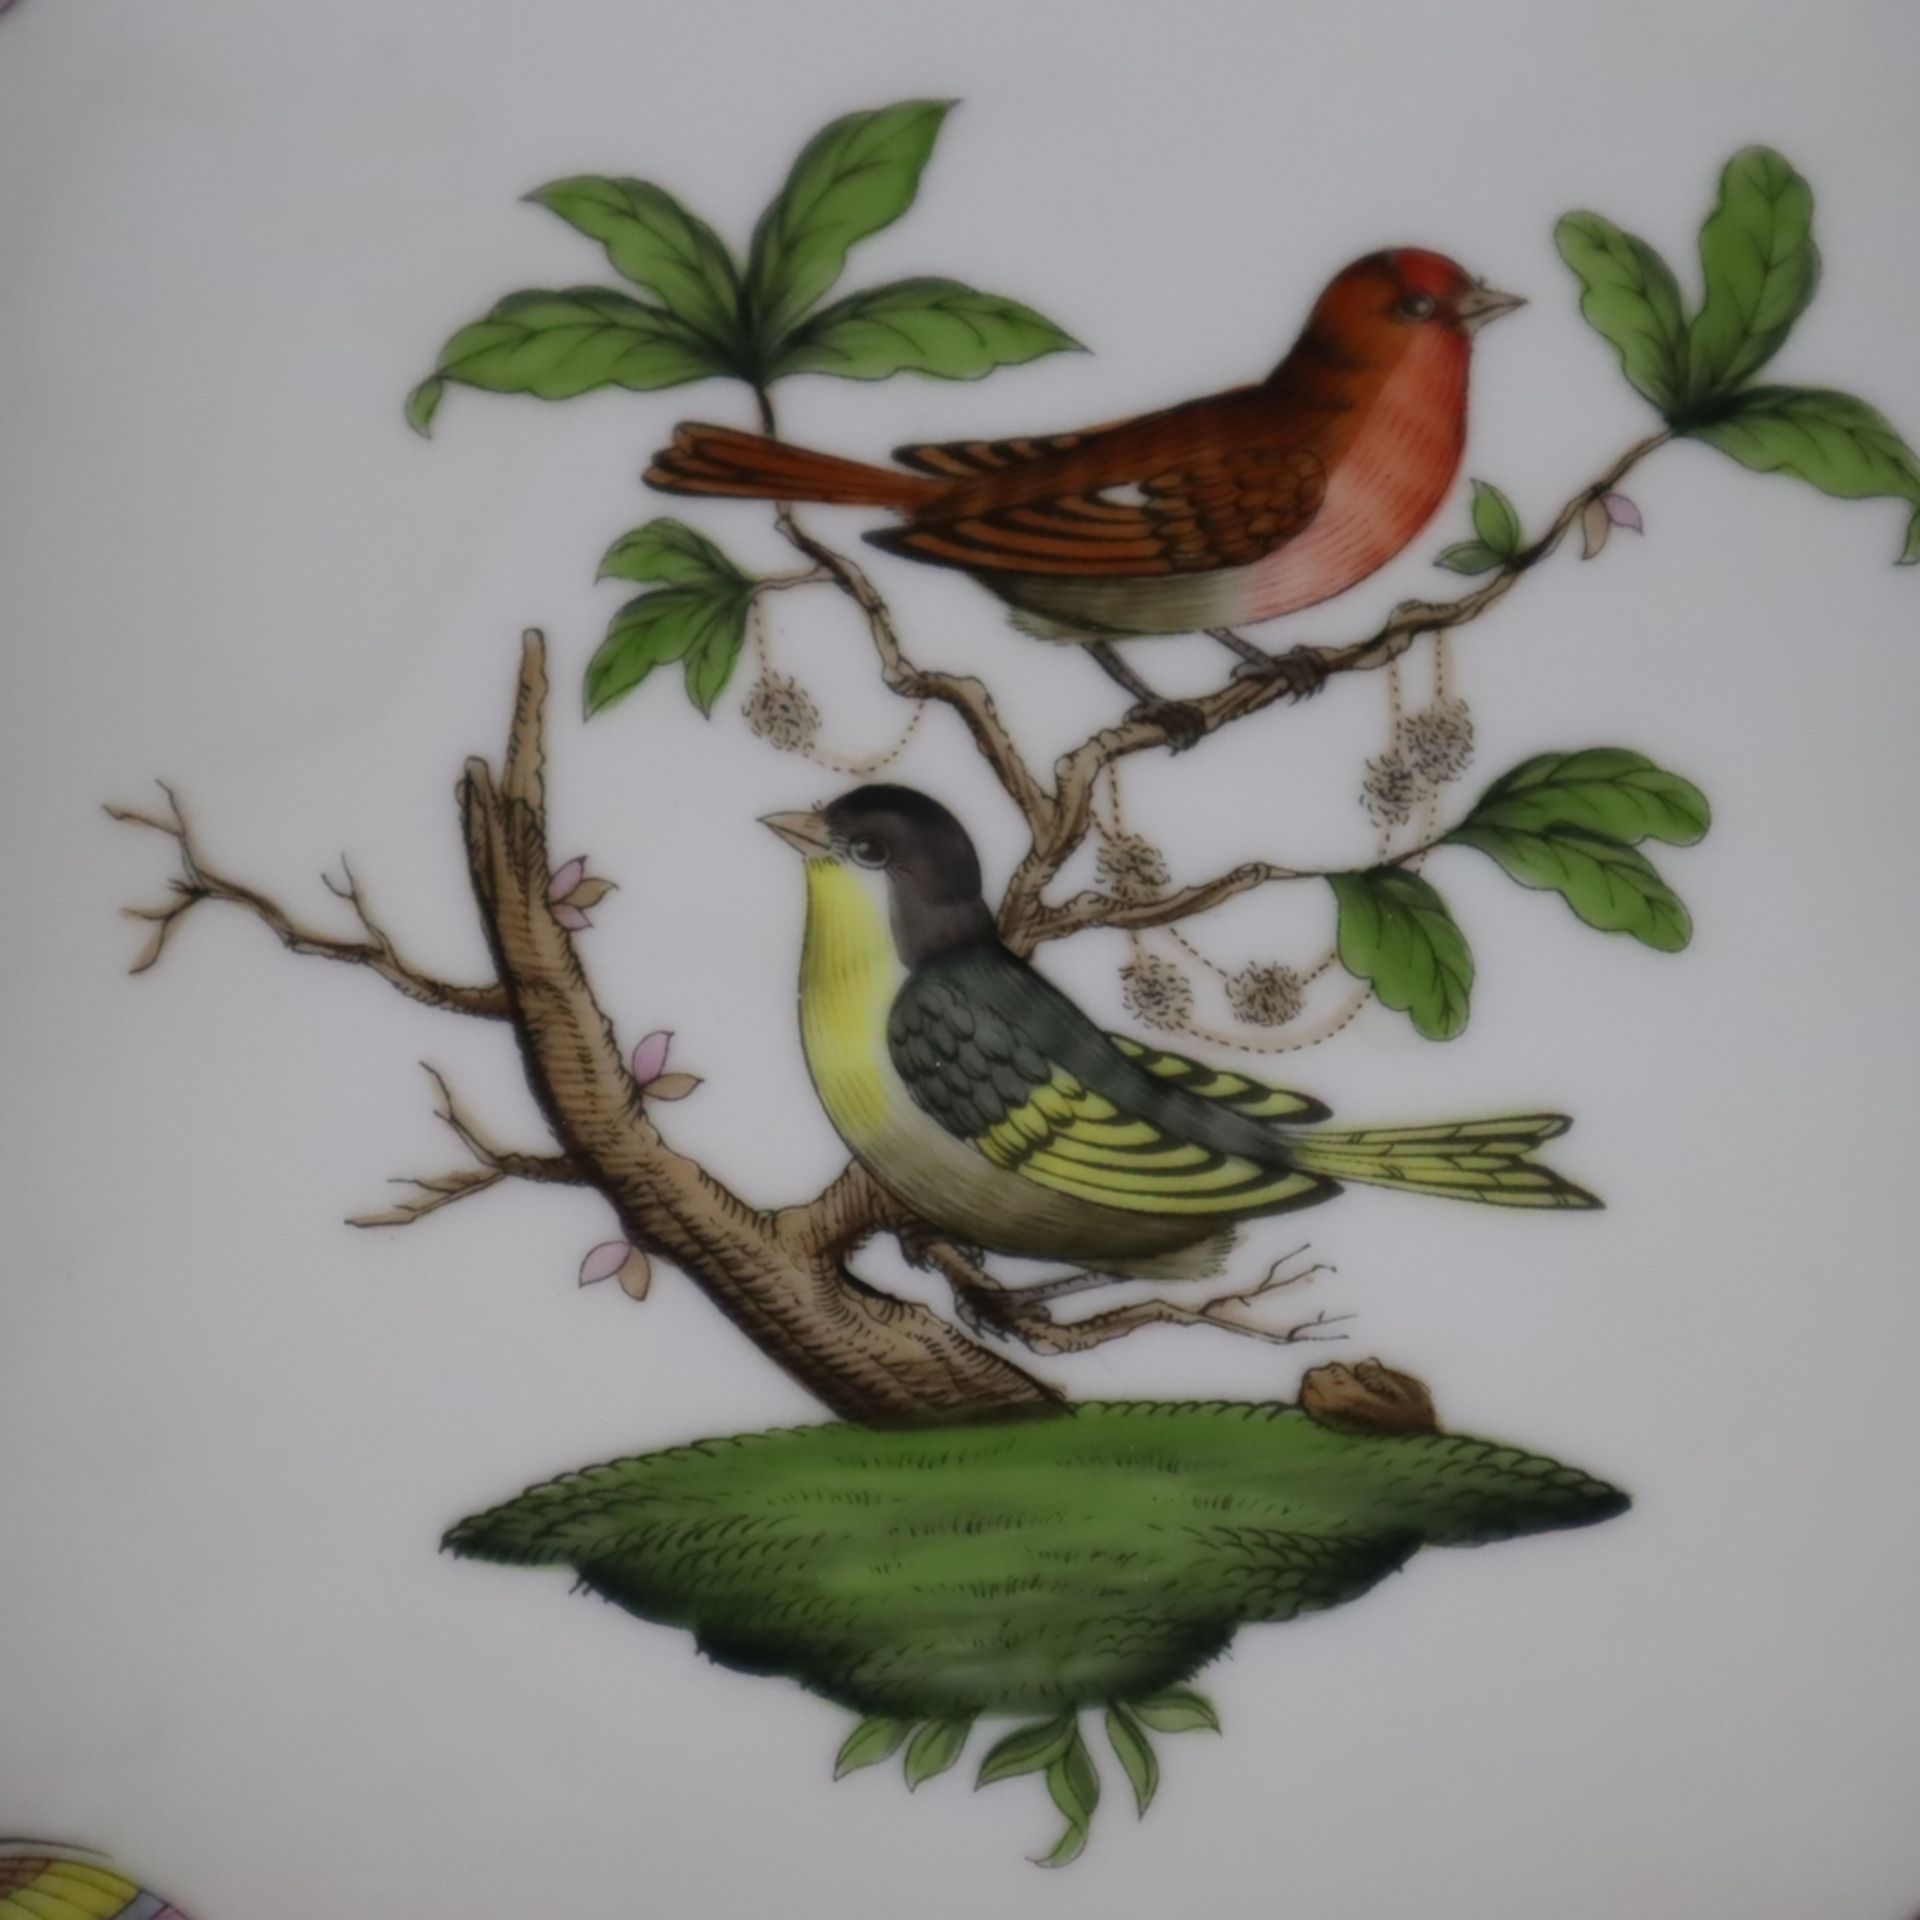 Gebäckschale- Herend, Ungarn, Porzellan, Dekor "Rothschild", polychrome Malerei mit Vogel-und Insek - Bild 2 aus 9